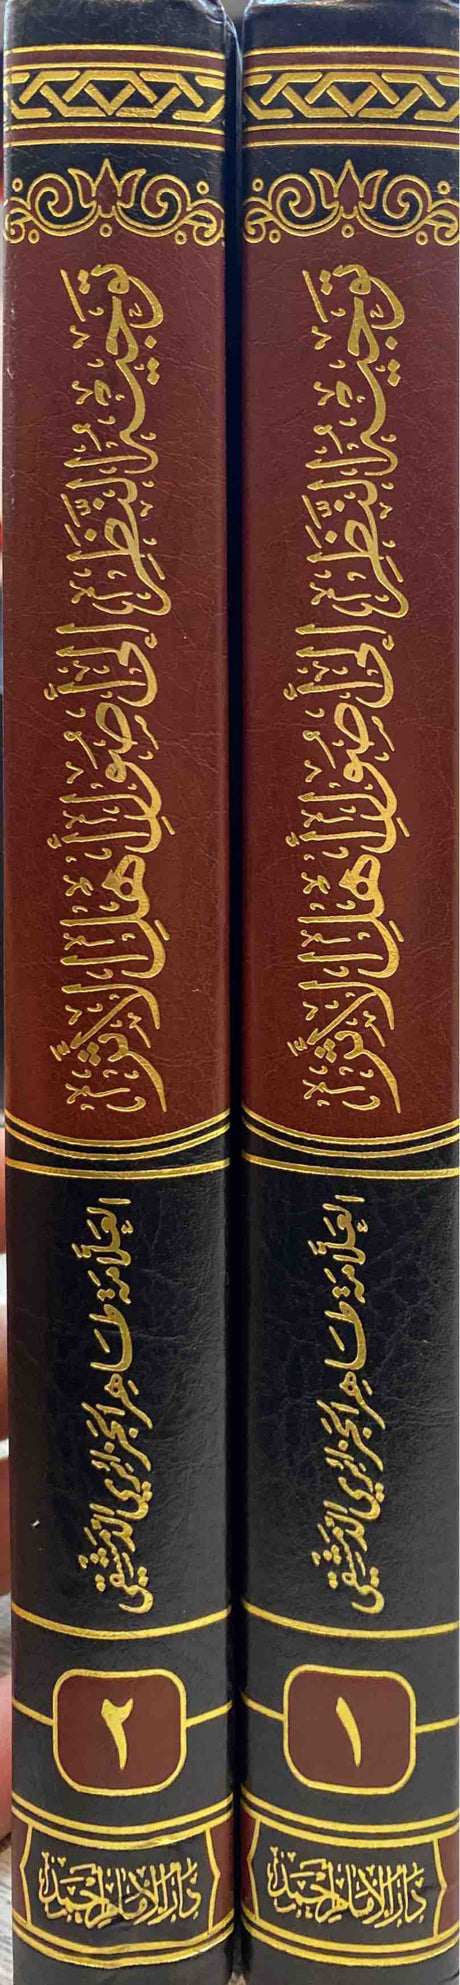 توجيه النظر الى أصول اهل الأثر Tawjih An Nathar Ila Usul Ahlul Athar (2 Volume Set)